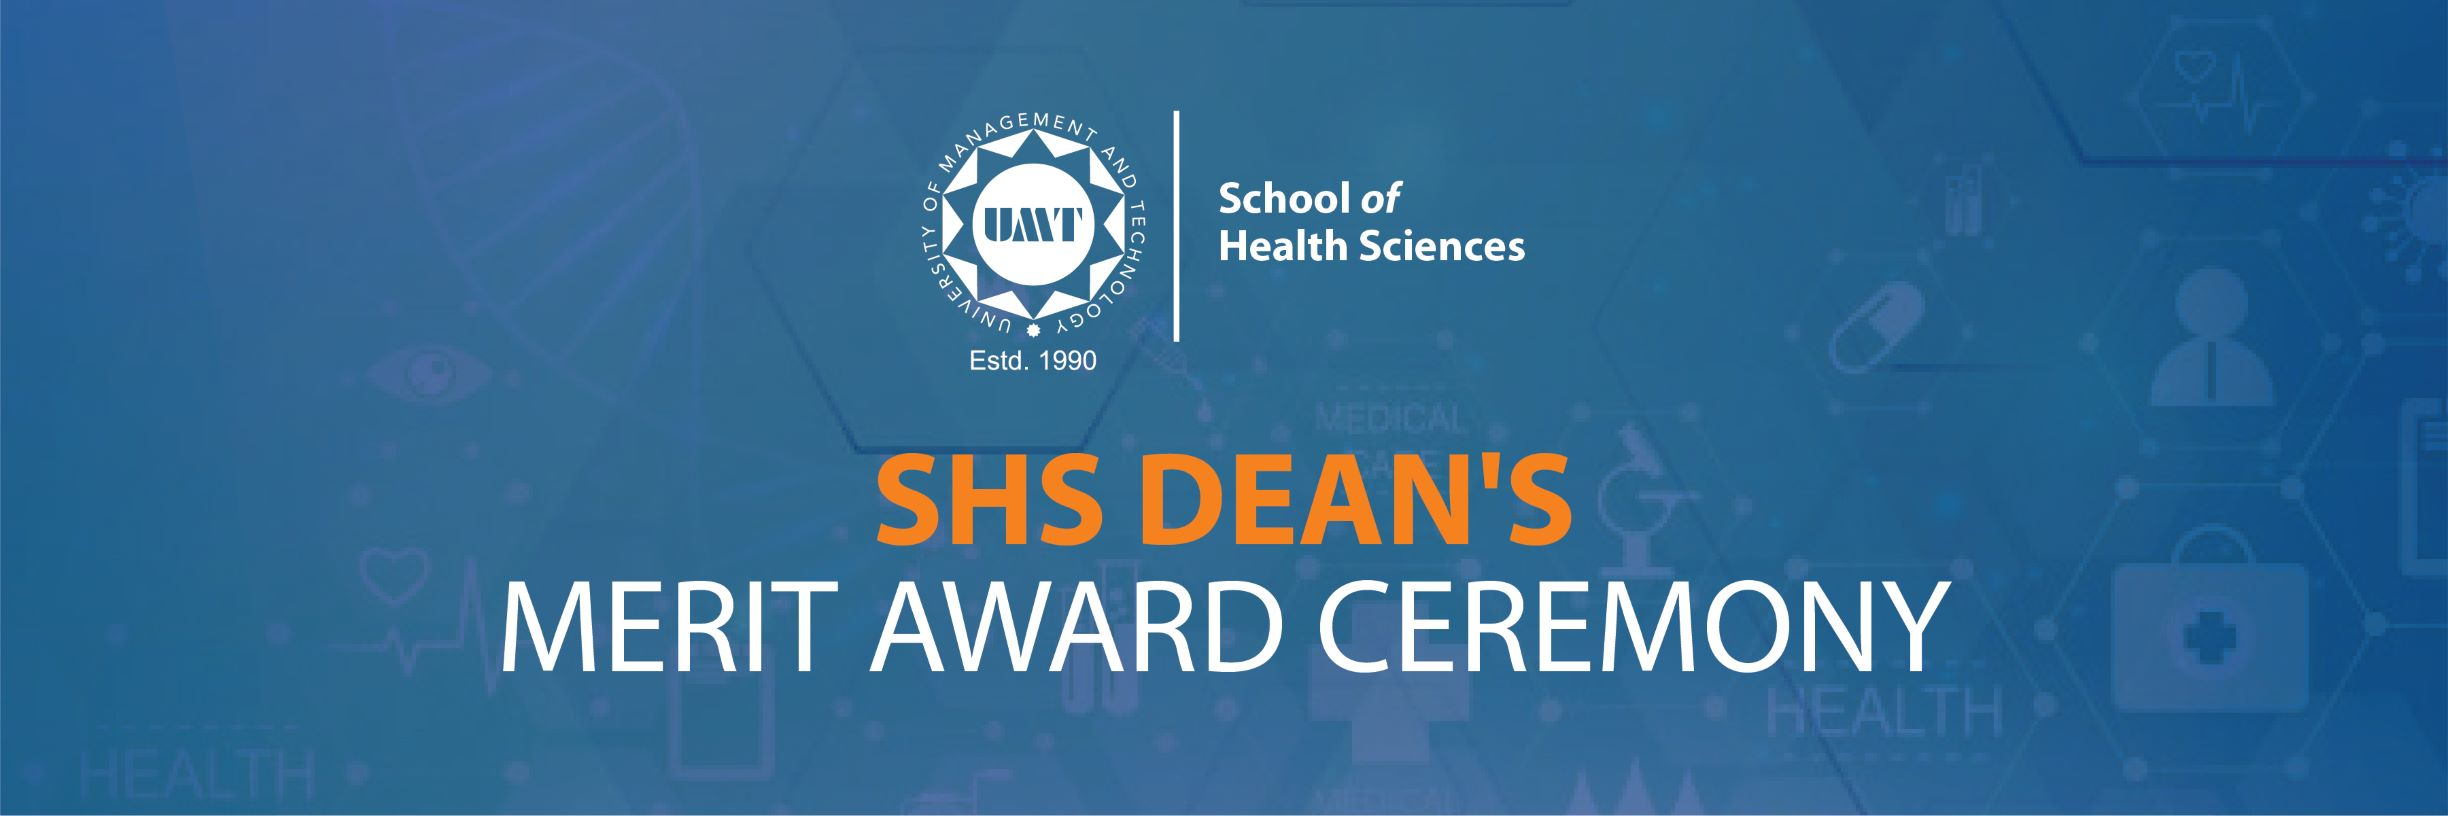 SHS Dean Merit Award Ceremony